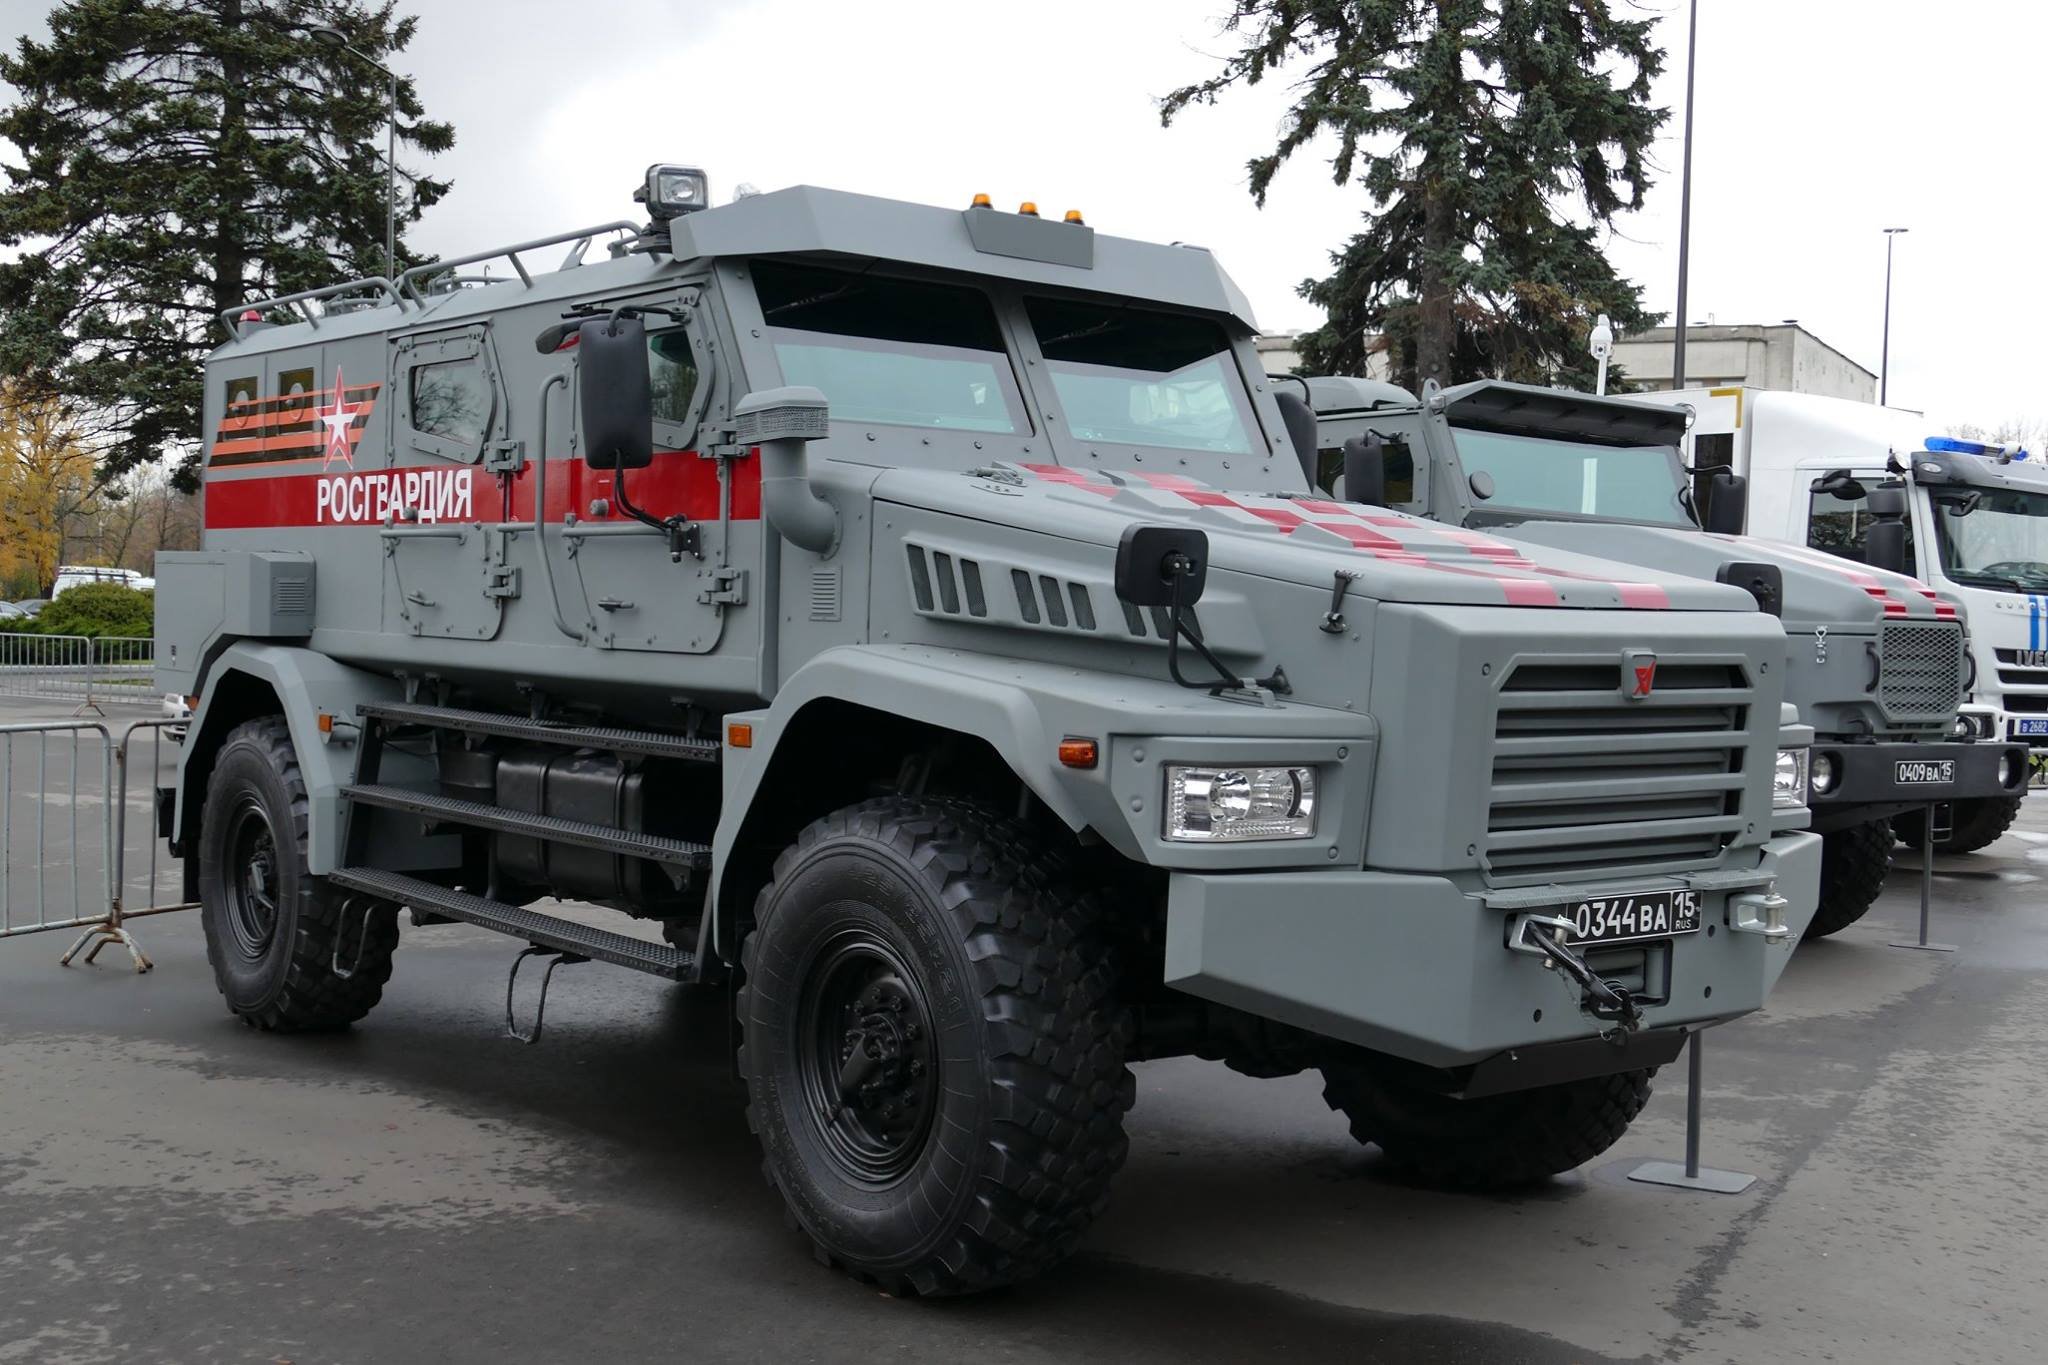 Українська артилерія знищила рідкісний броньований автомобіль росгвардії «Патруль-А»